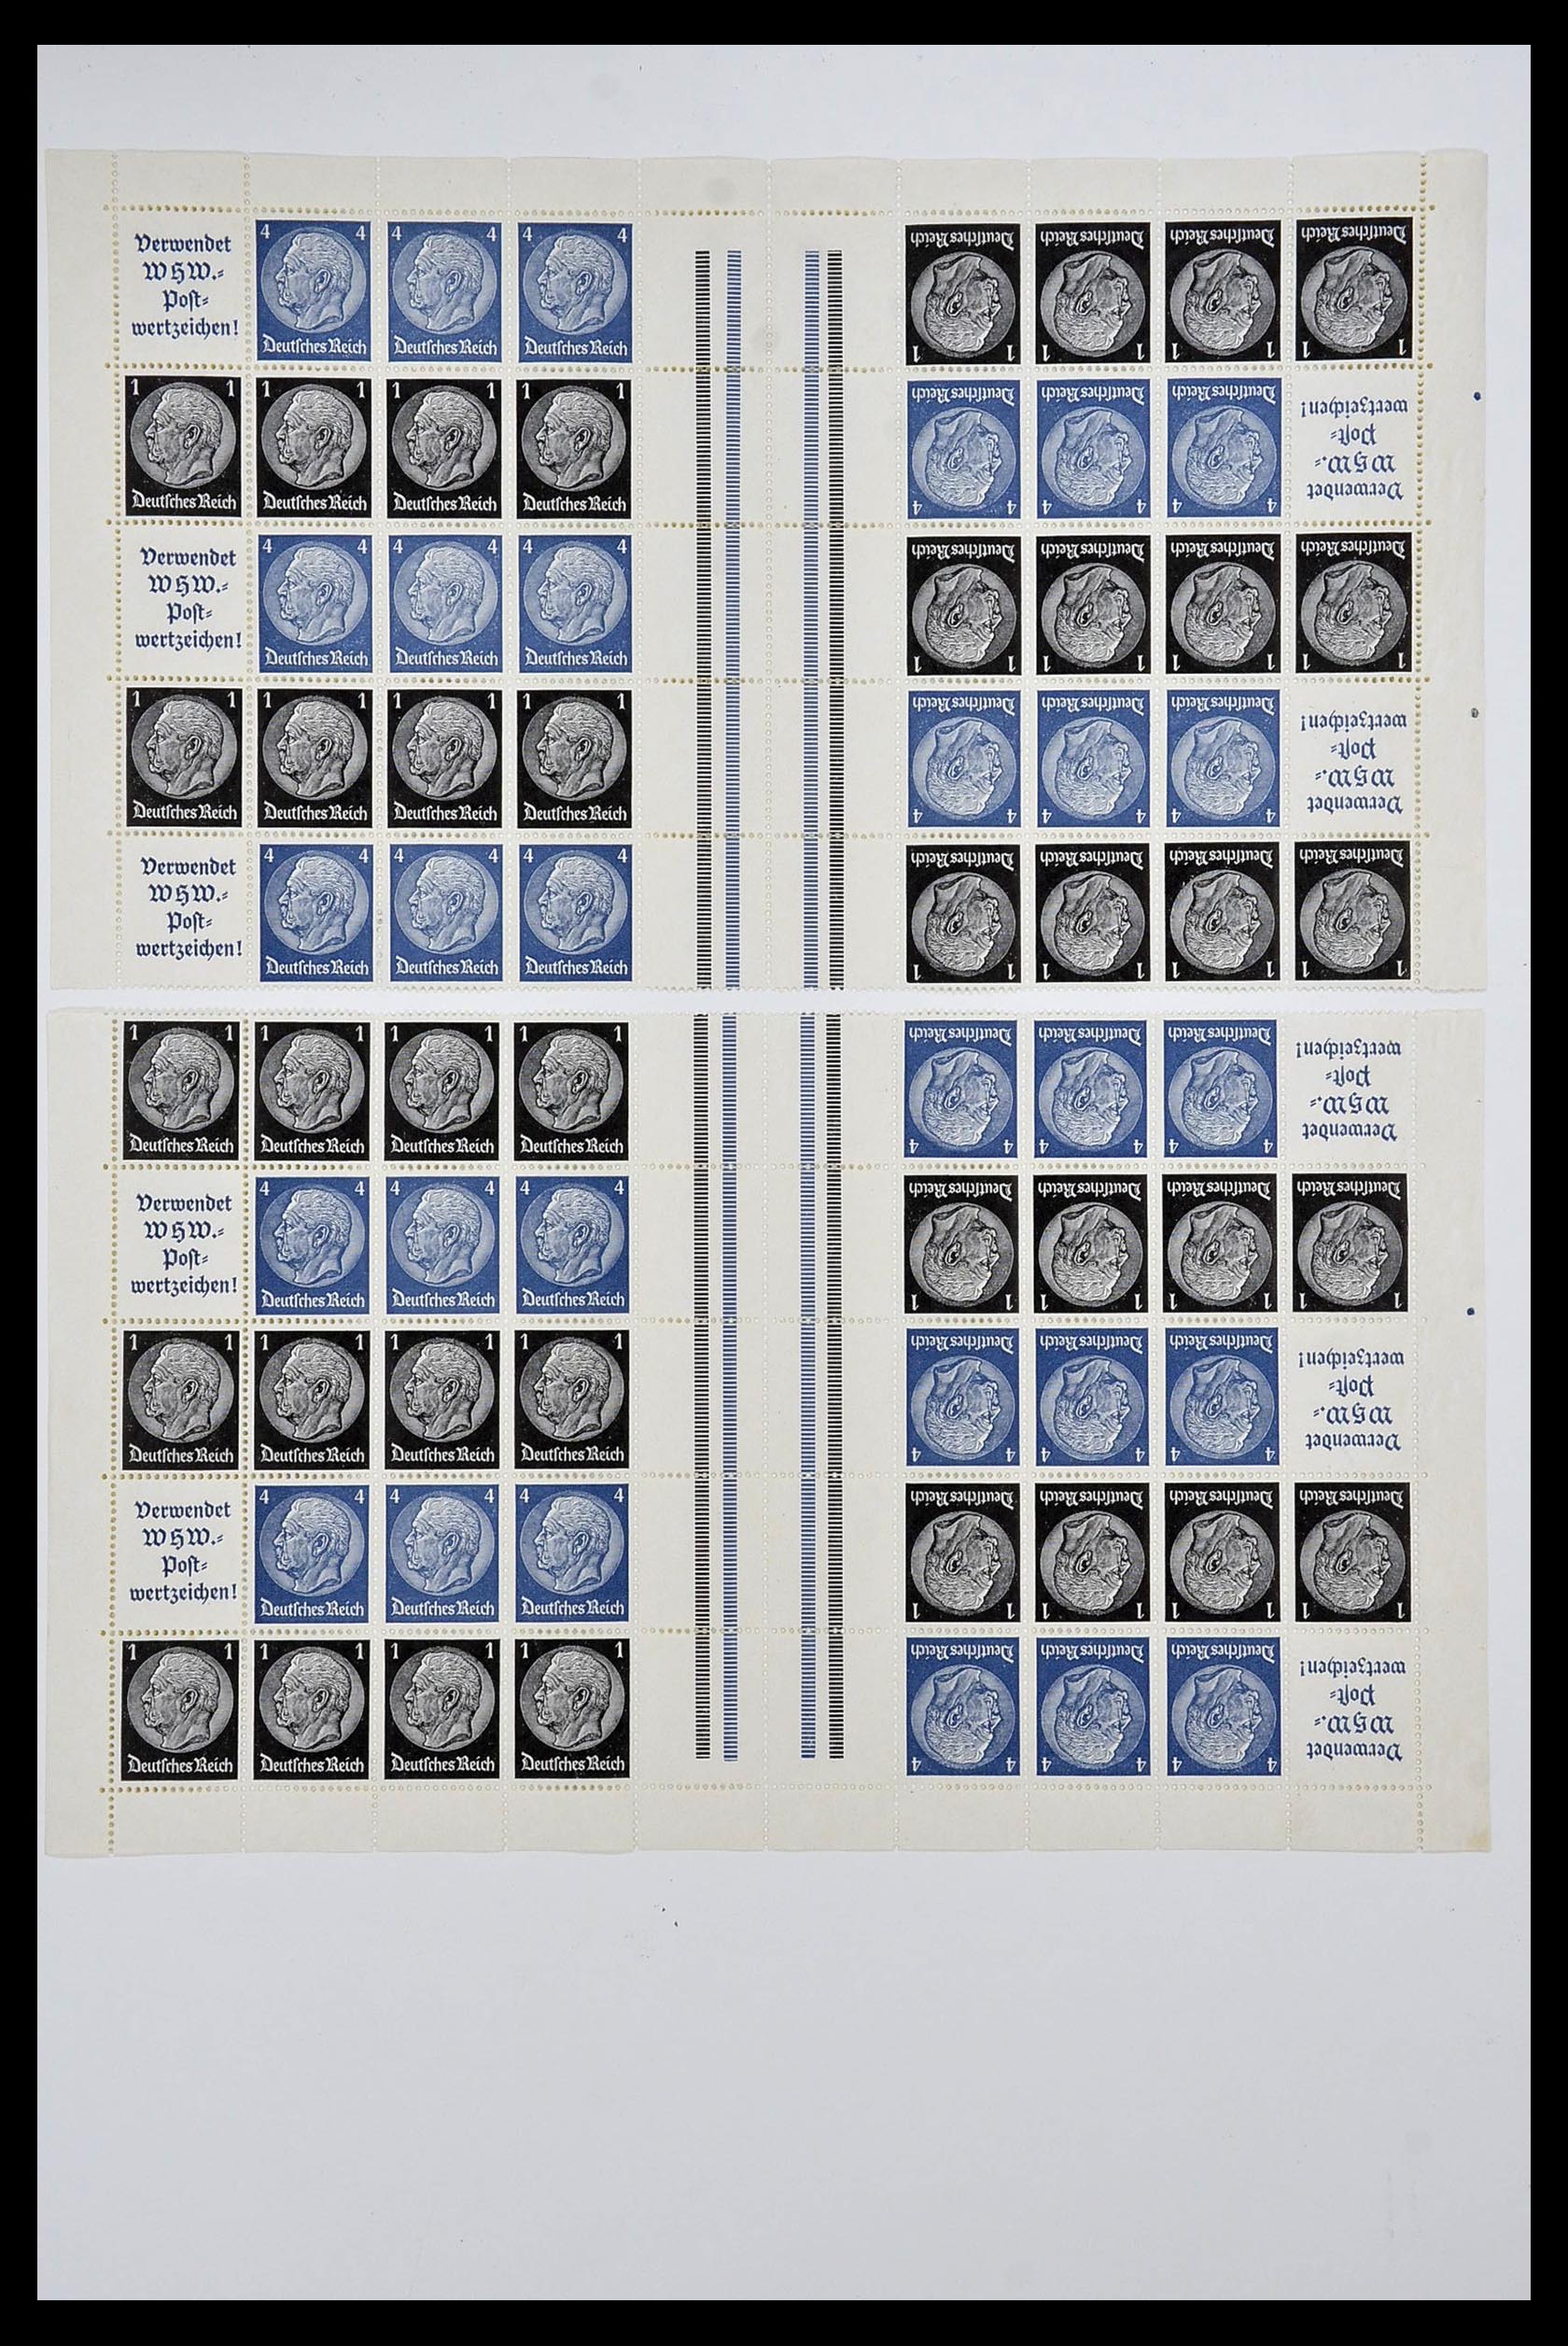 34164 047 - Stamp collection 34164 German Reich Markenheftchenbogen 1933-1942.